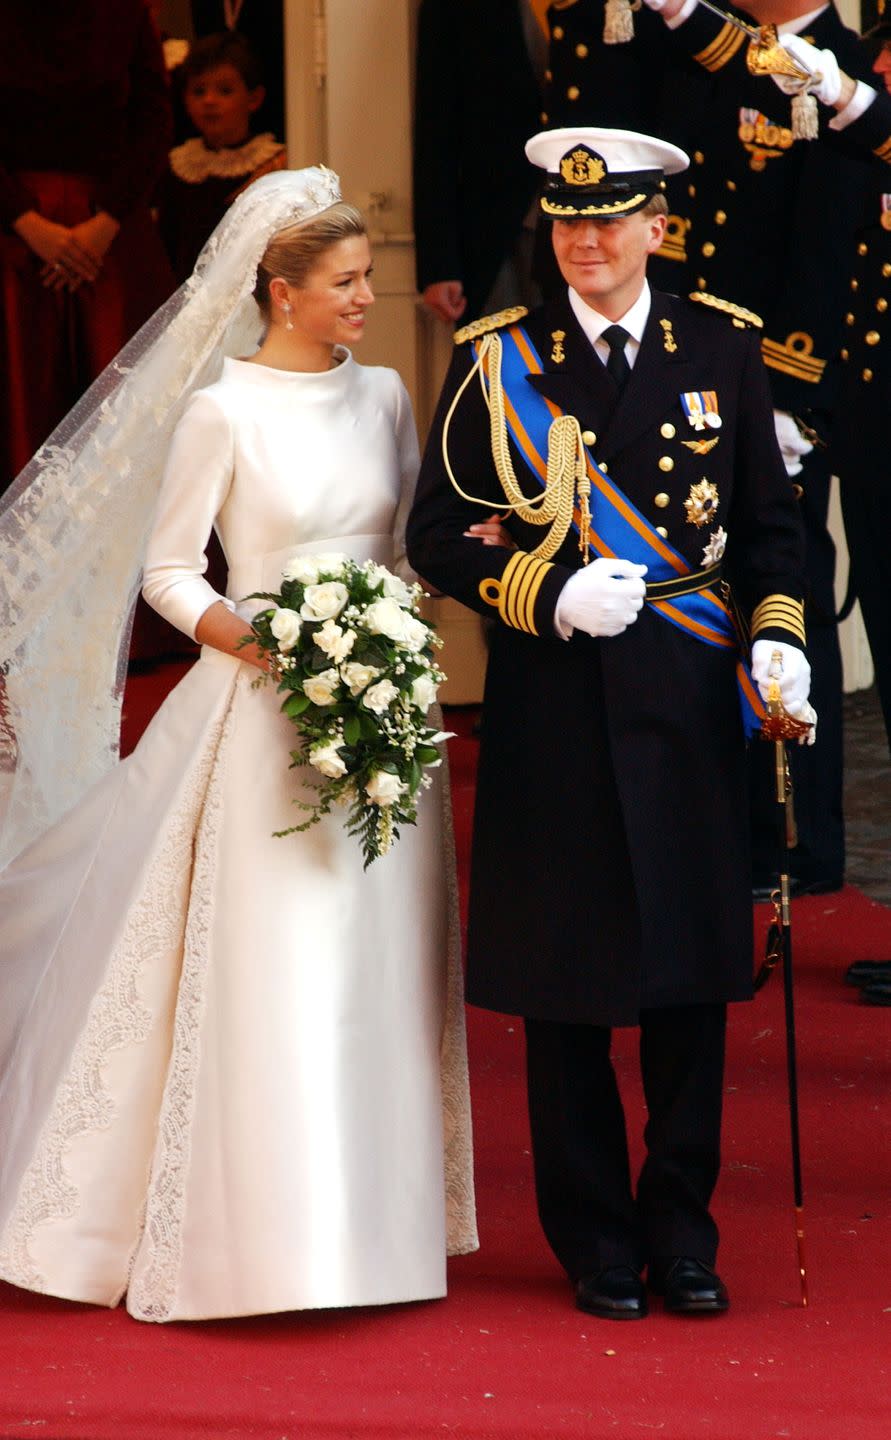 royal wedding in holland